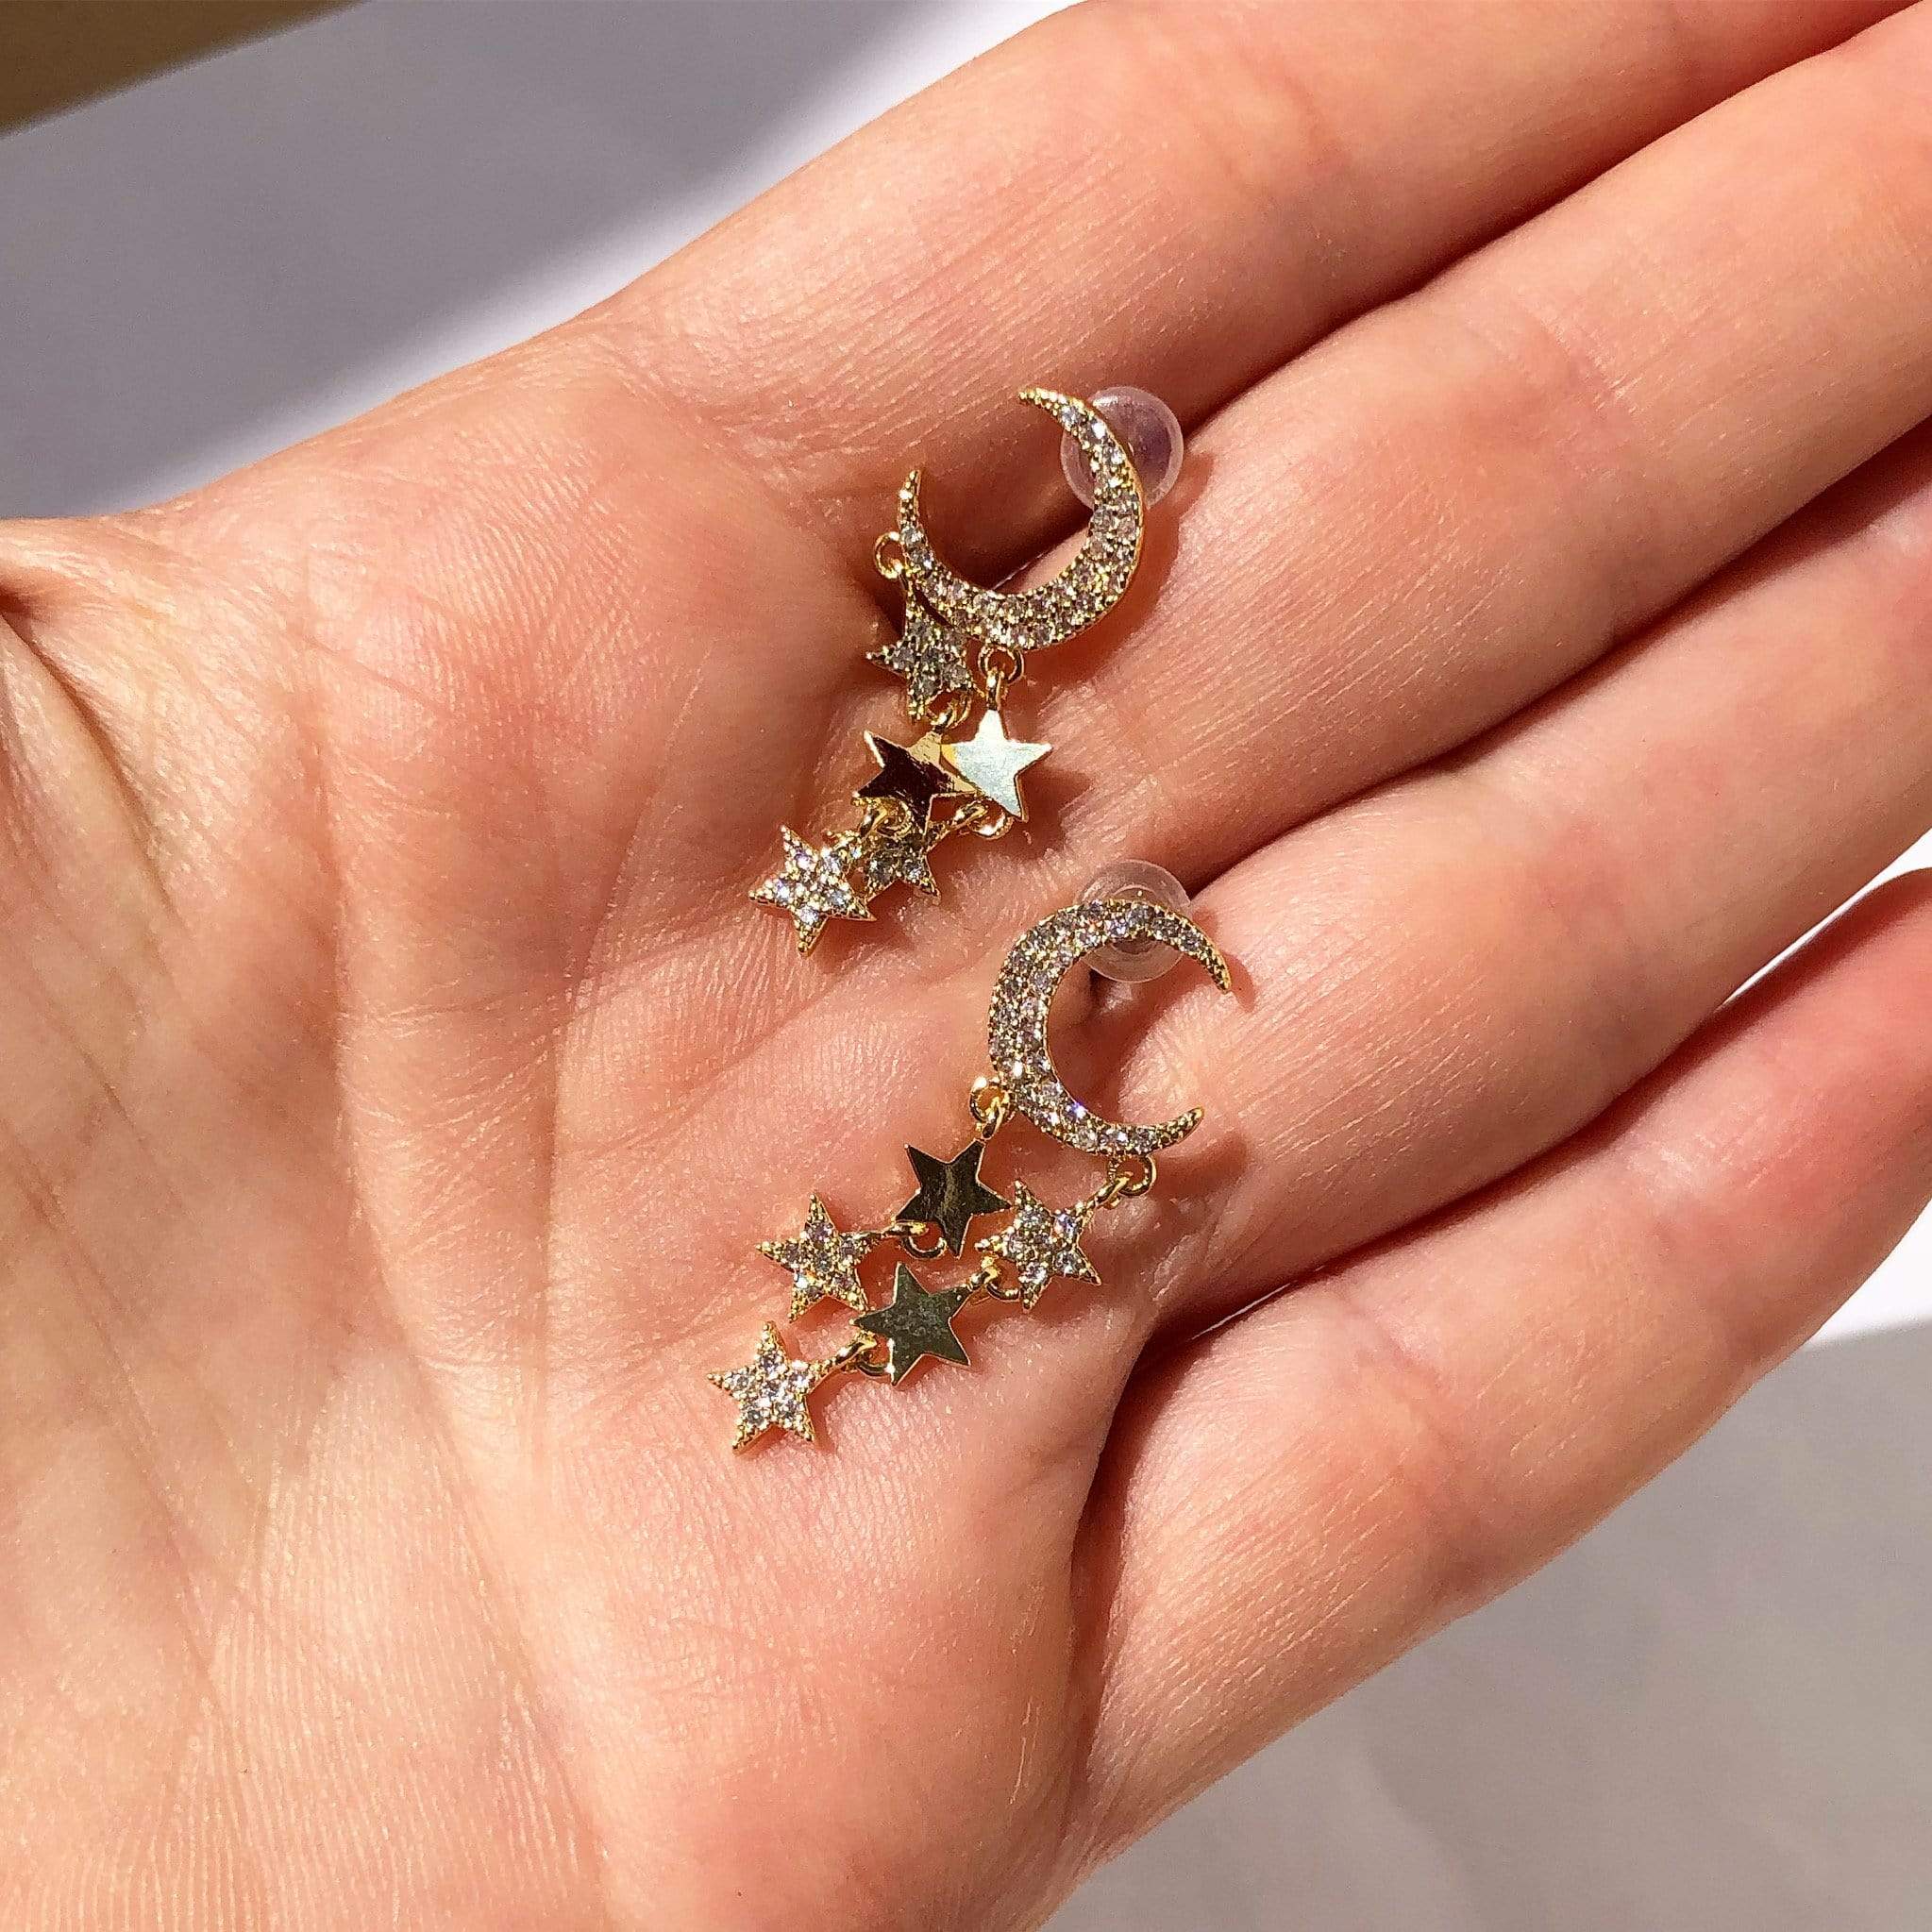 Moon Stars Earrings